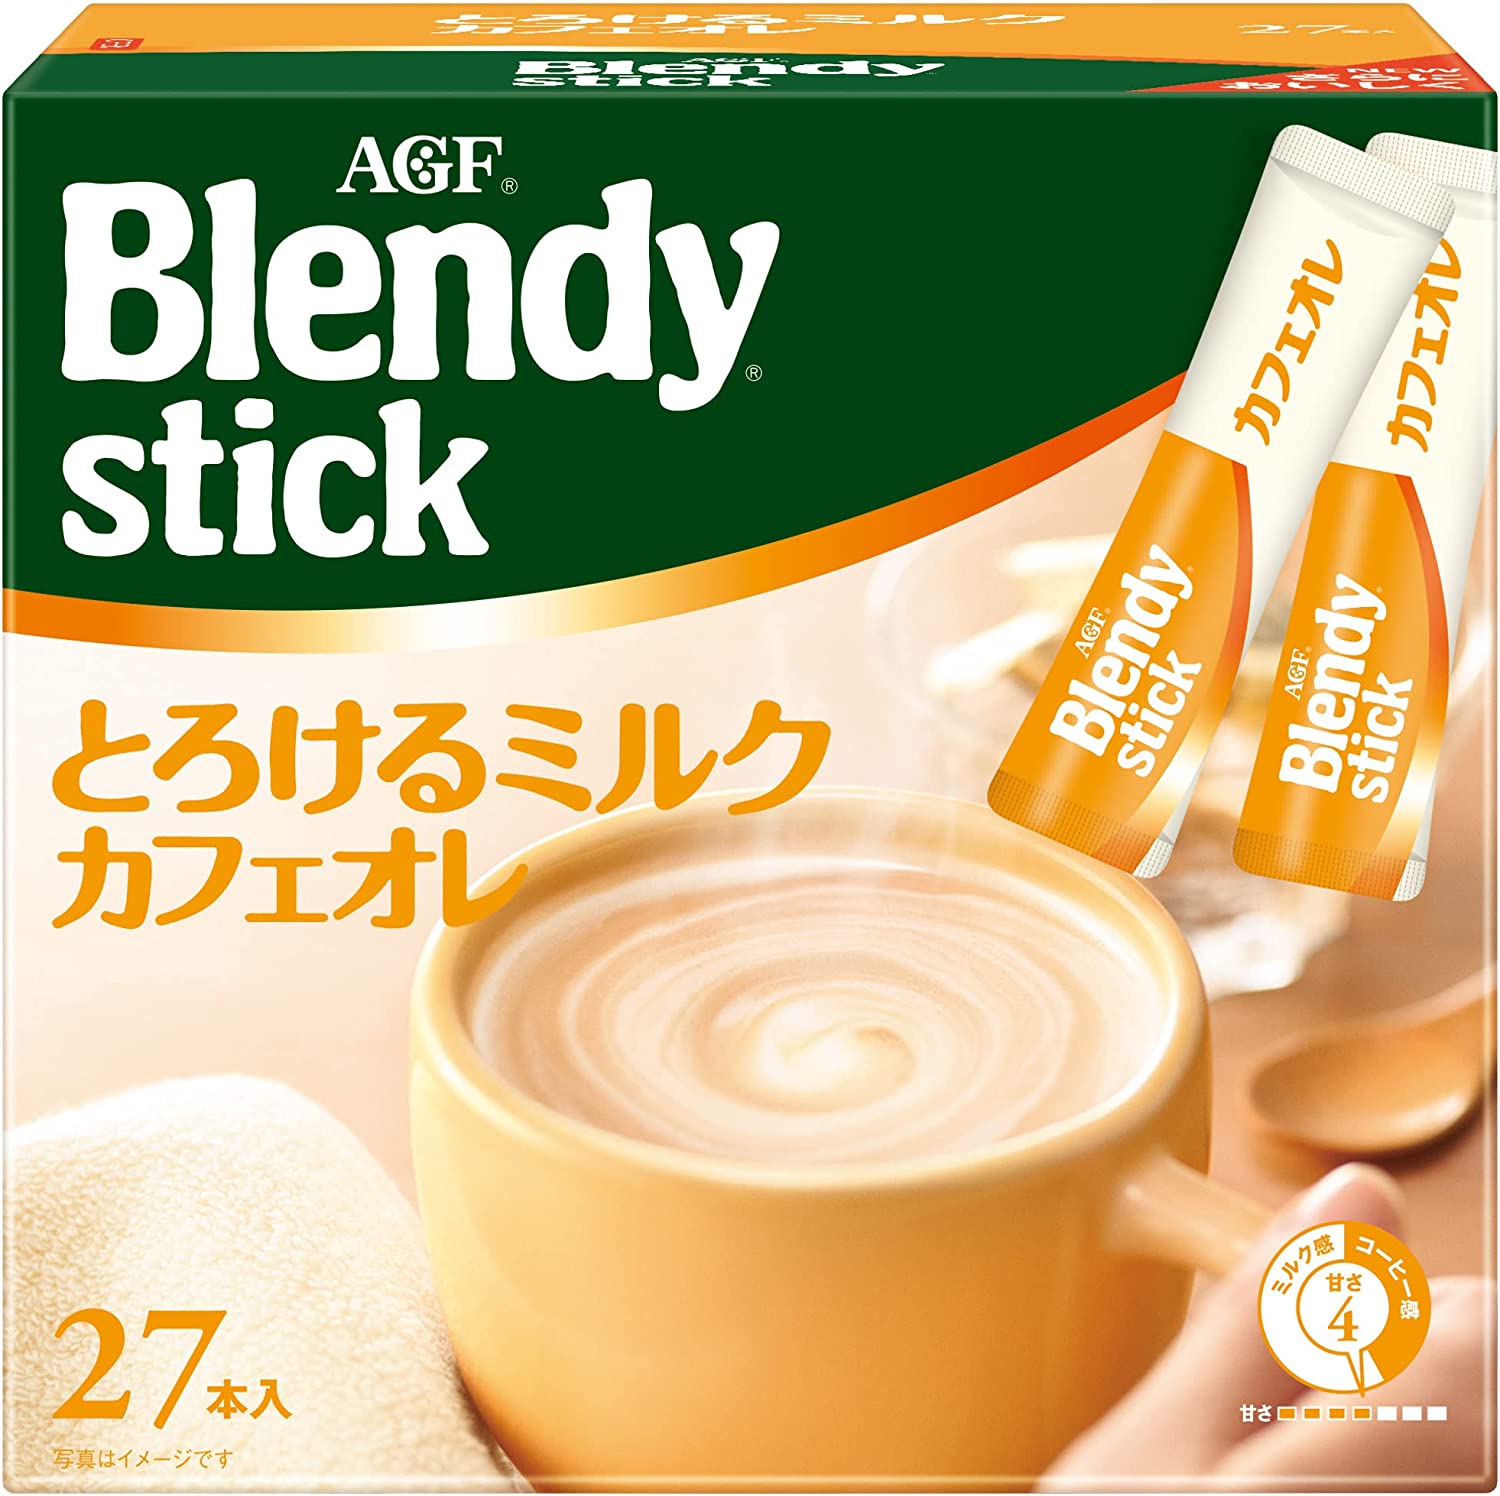 味之素AGF Blendy Ajinomoto Agf Brendy Stick融化牛奶咖啡廳27件